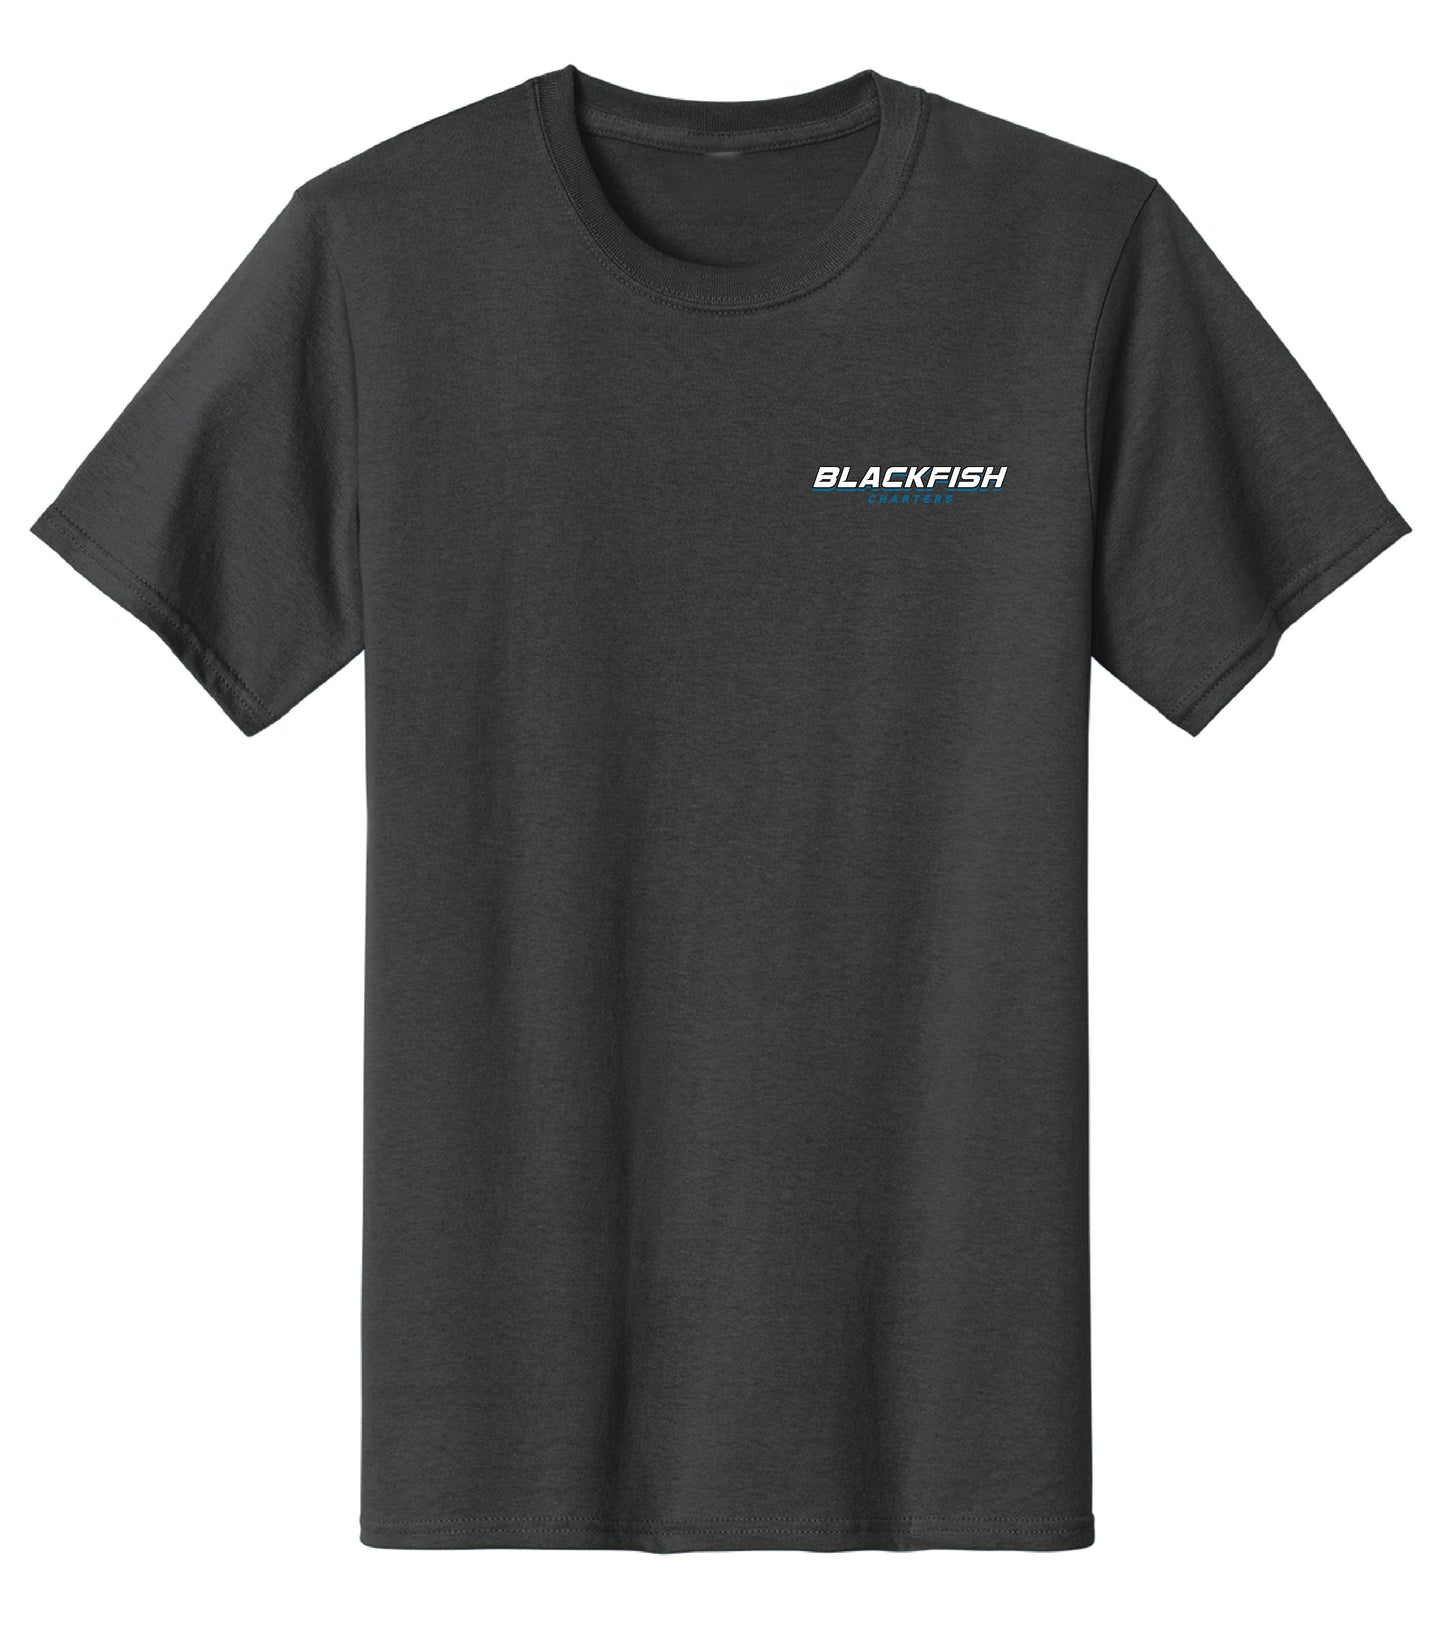 Blackfish Boat Shirt